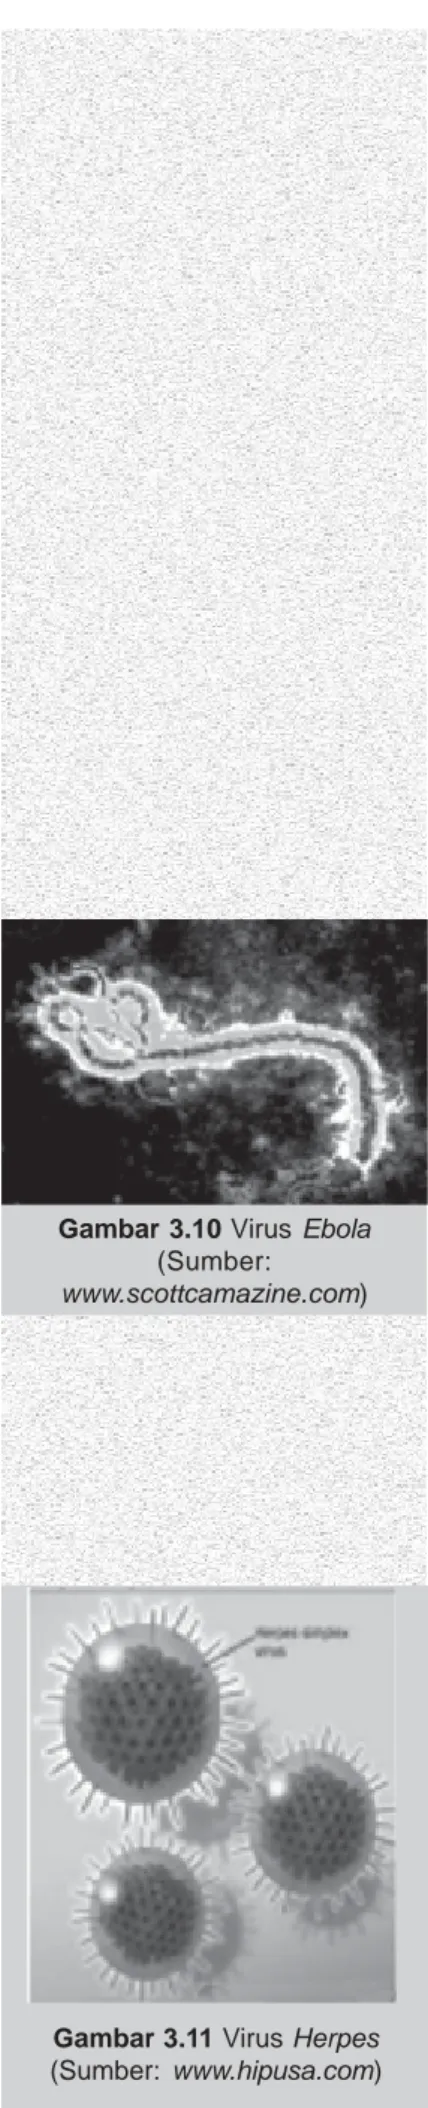 Gambar 3.10 Virus Ebola (Sumber: